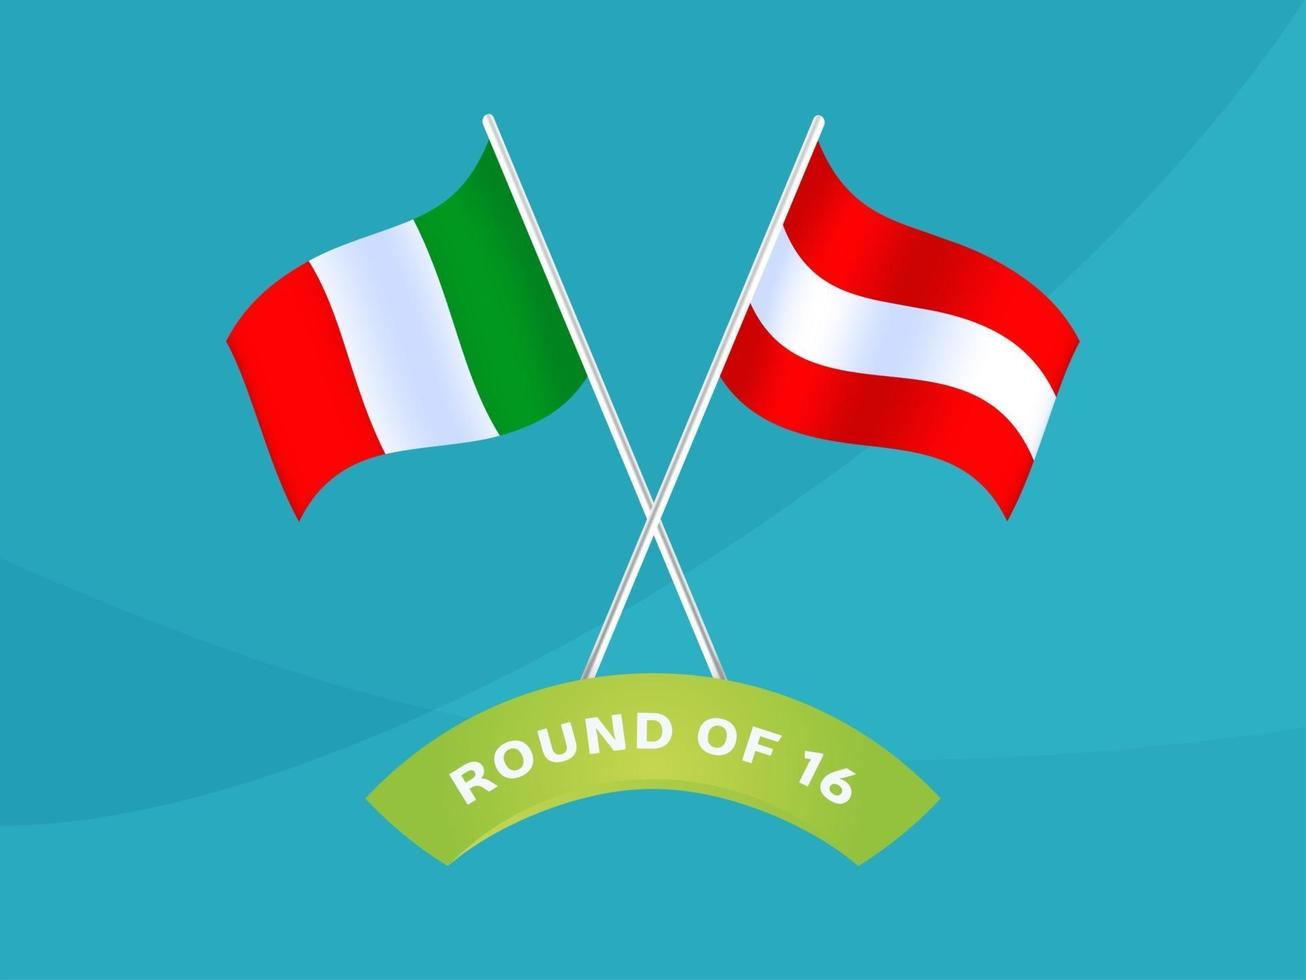 Italia vs austria partido de octavos de final, campeonato europeo de fútbol 2020 ilustración vectorial. Campeonato de fútbol 2020 partido contra equipos intro fondo deportivo vector